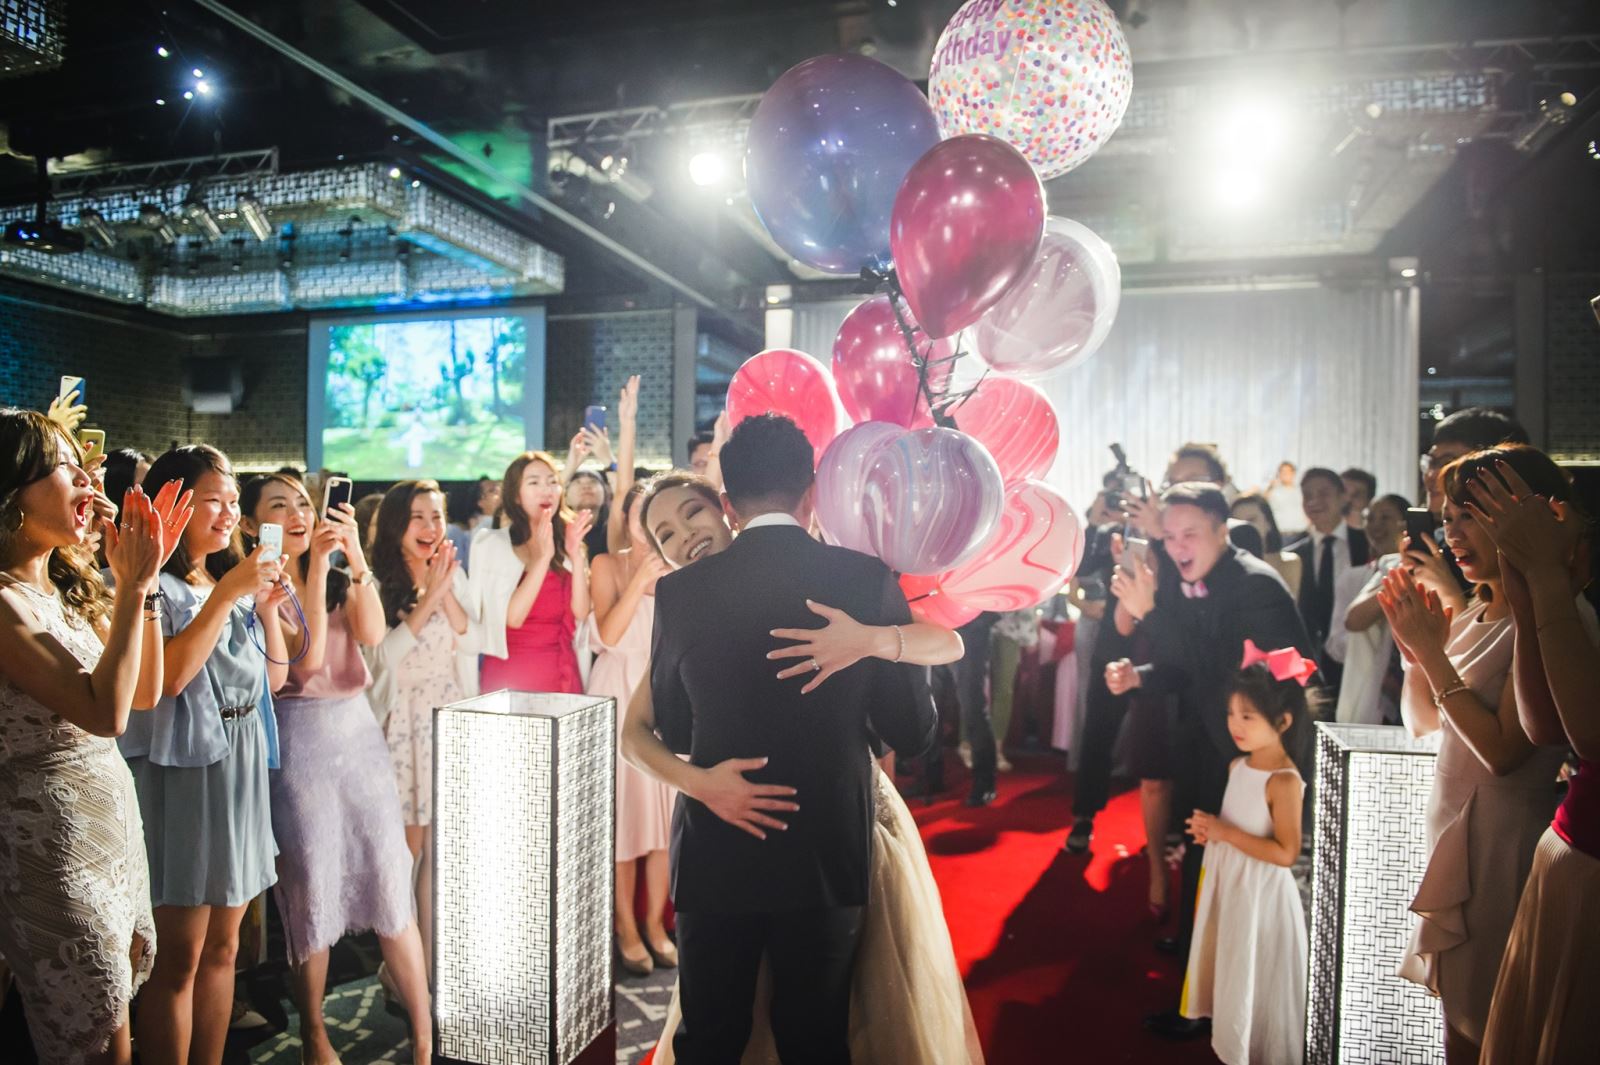 晶華酒店婚禮,新郎送上粉紅氣球作為新娘生日驚喜,全場齊聲唱生日快樂歌